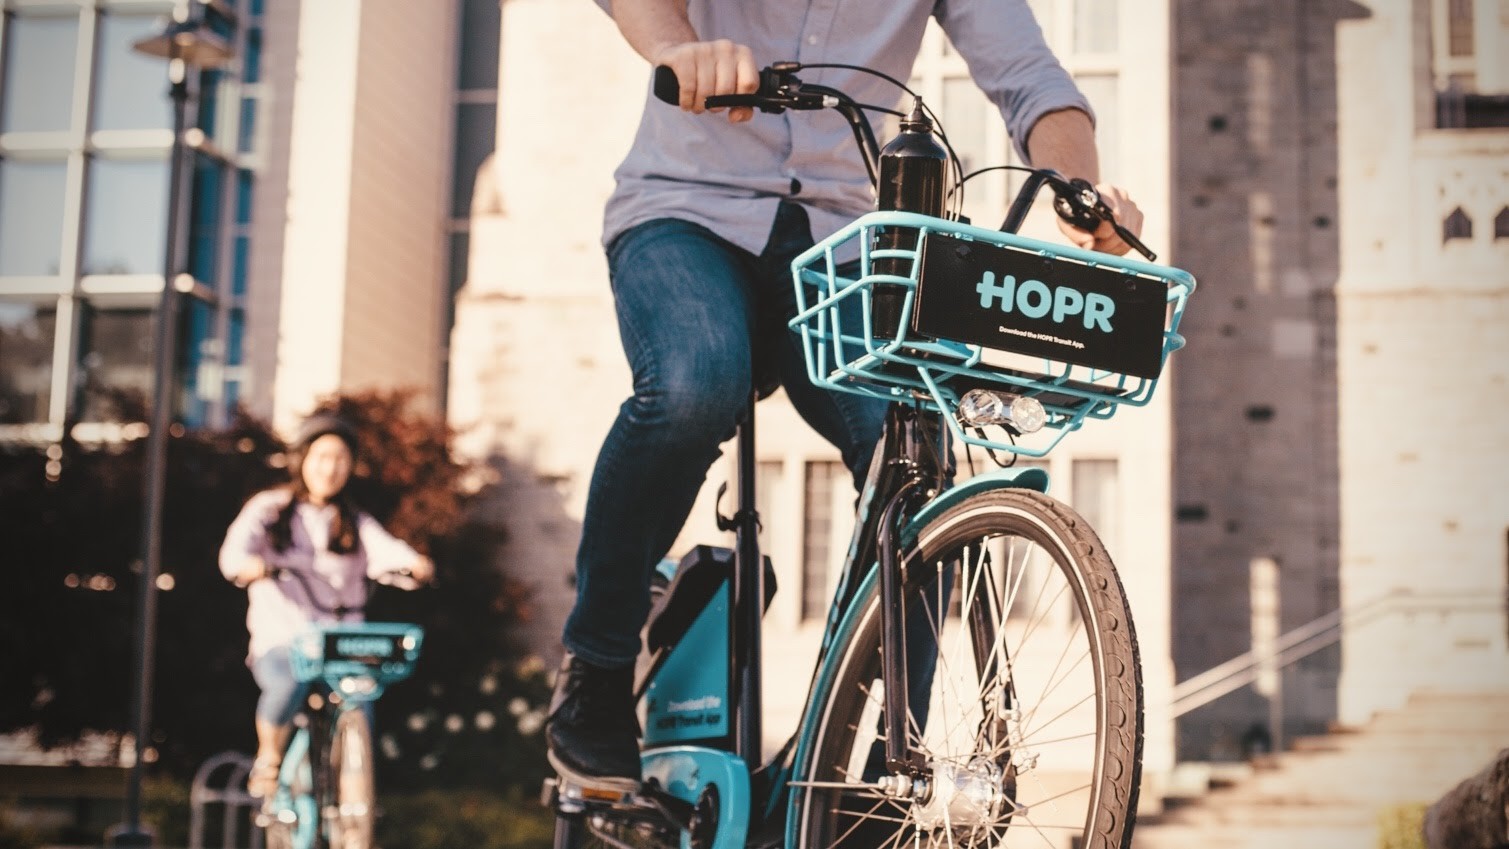 HOPR electric bike green Coast bike share